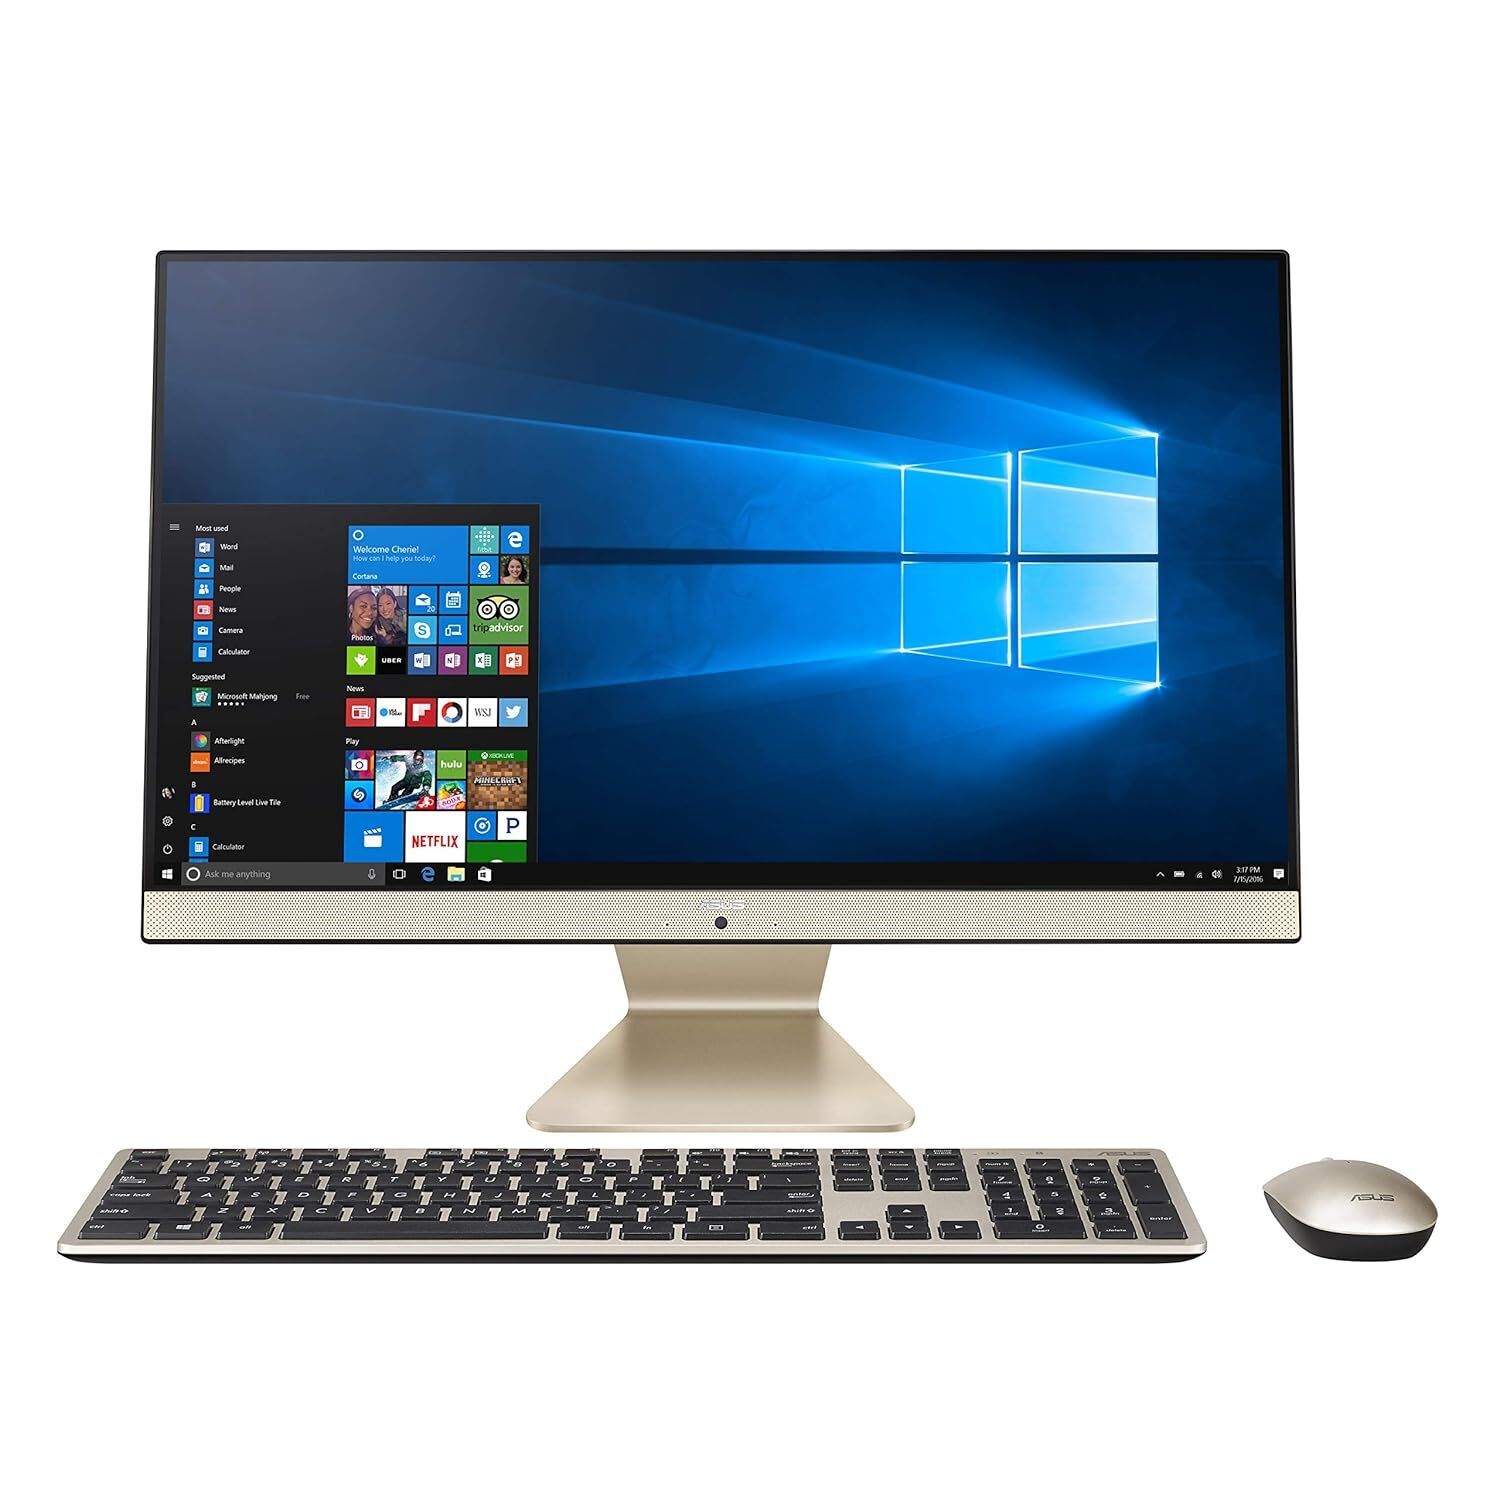 ASUS AiO All-in-One Desktop PC, 23.8� FHD Anti-glare Display, Intel Pentium Go